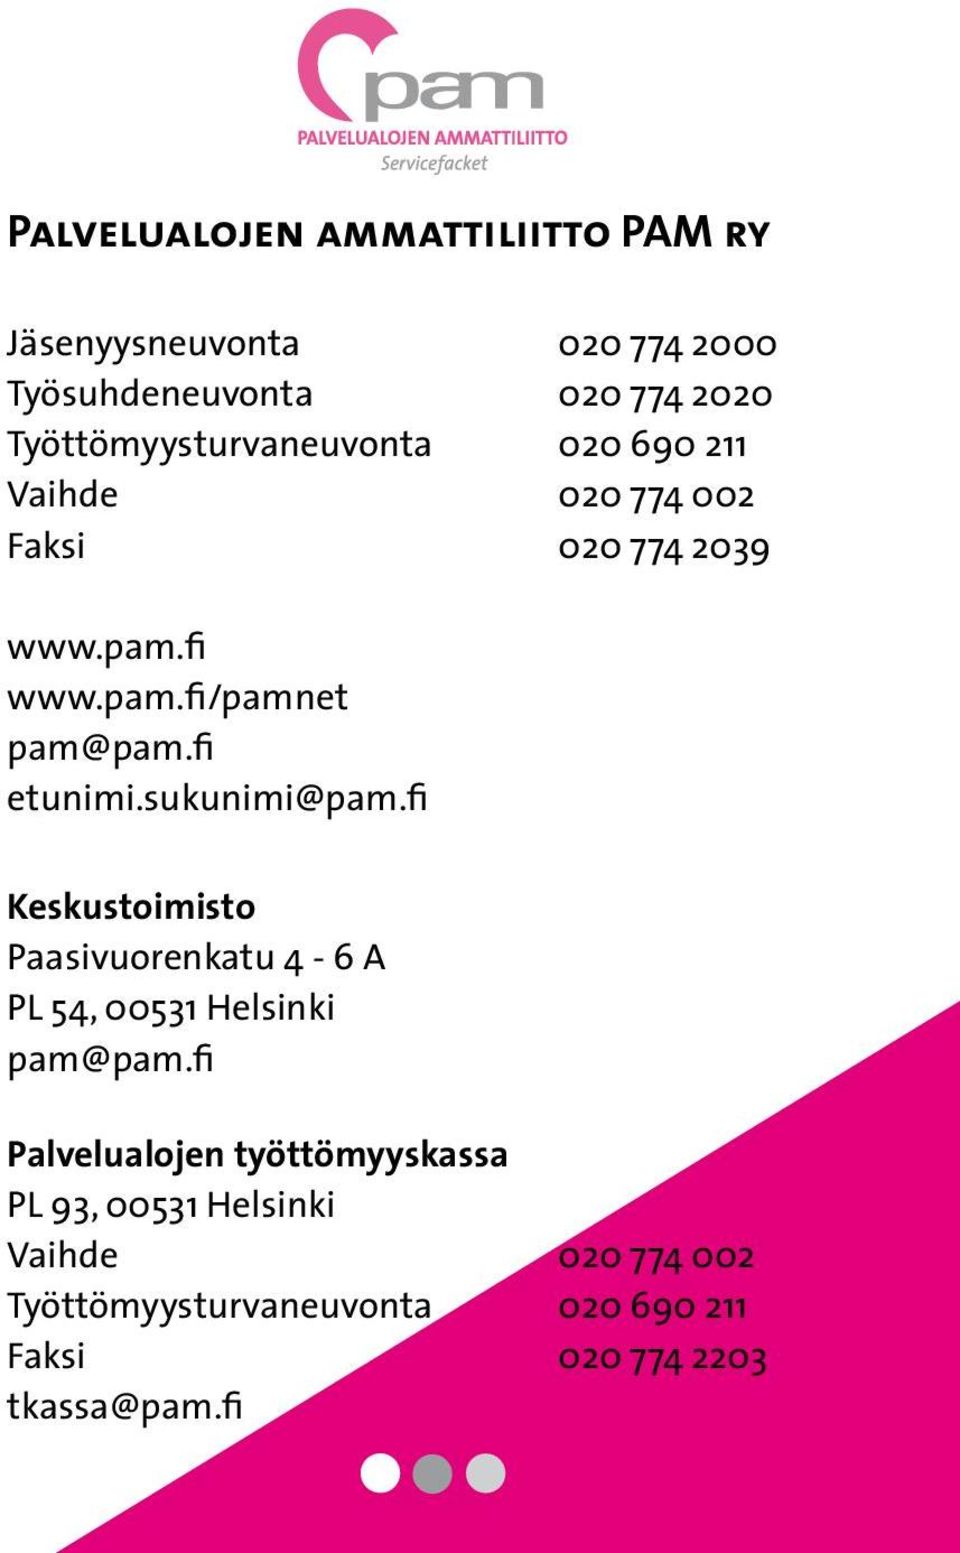 fi etunimi.sukunimi@pam.fi Keskustoimisto Paasivuorenkatu 4-6 A PL 54, 00531 Helsinki pam@pam.